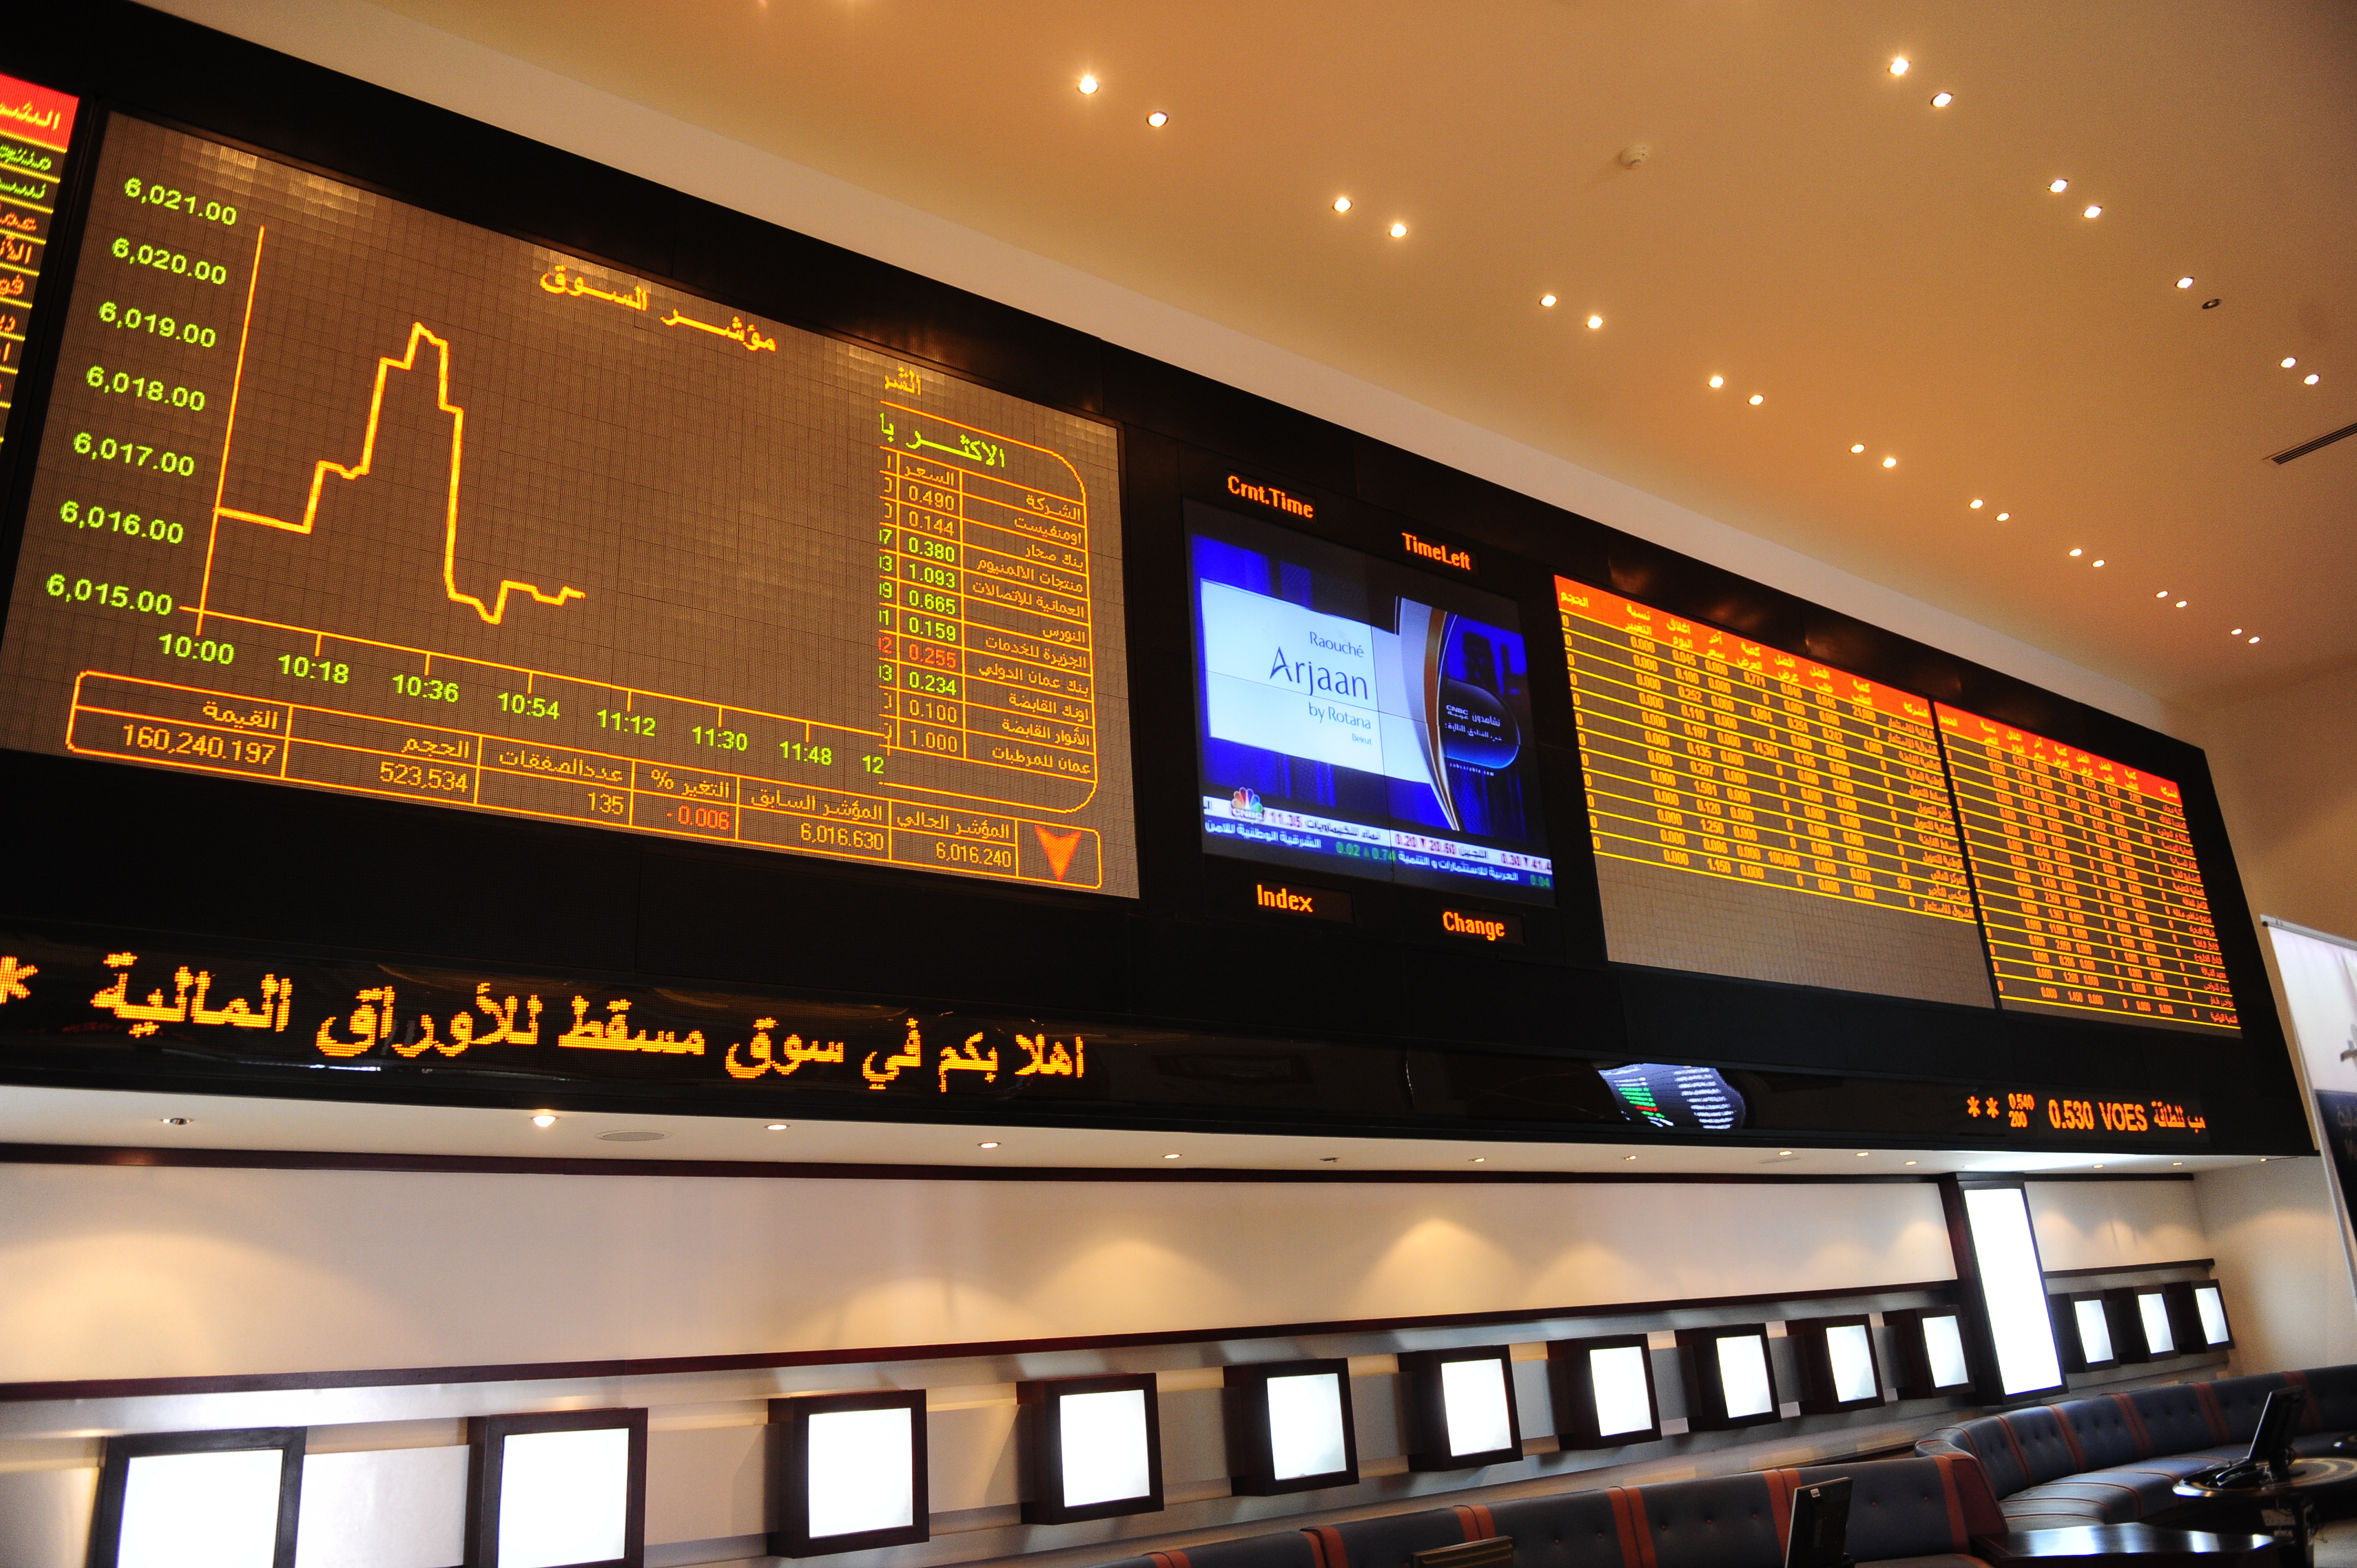 Muscat bourse declines on weak sentiment